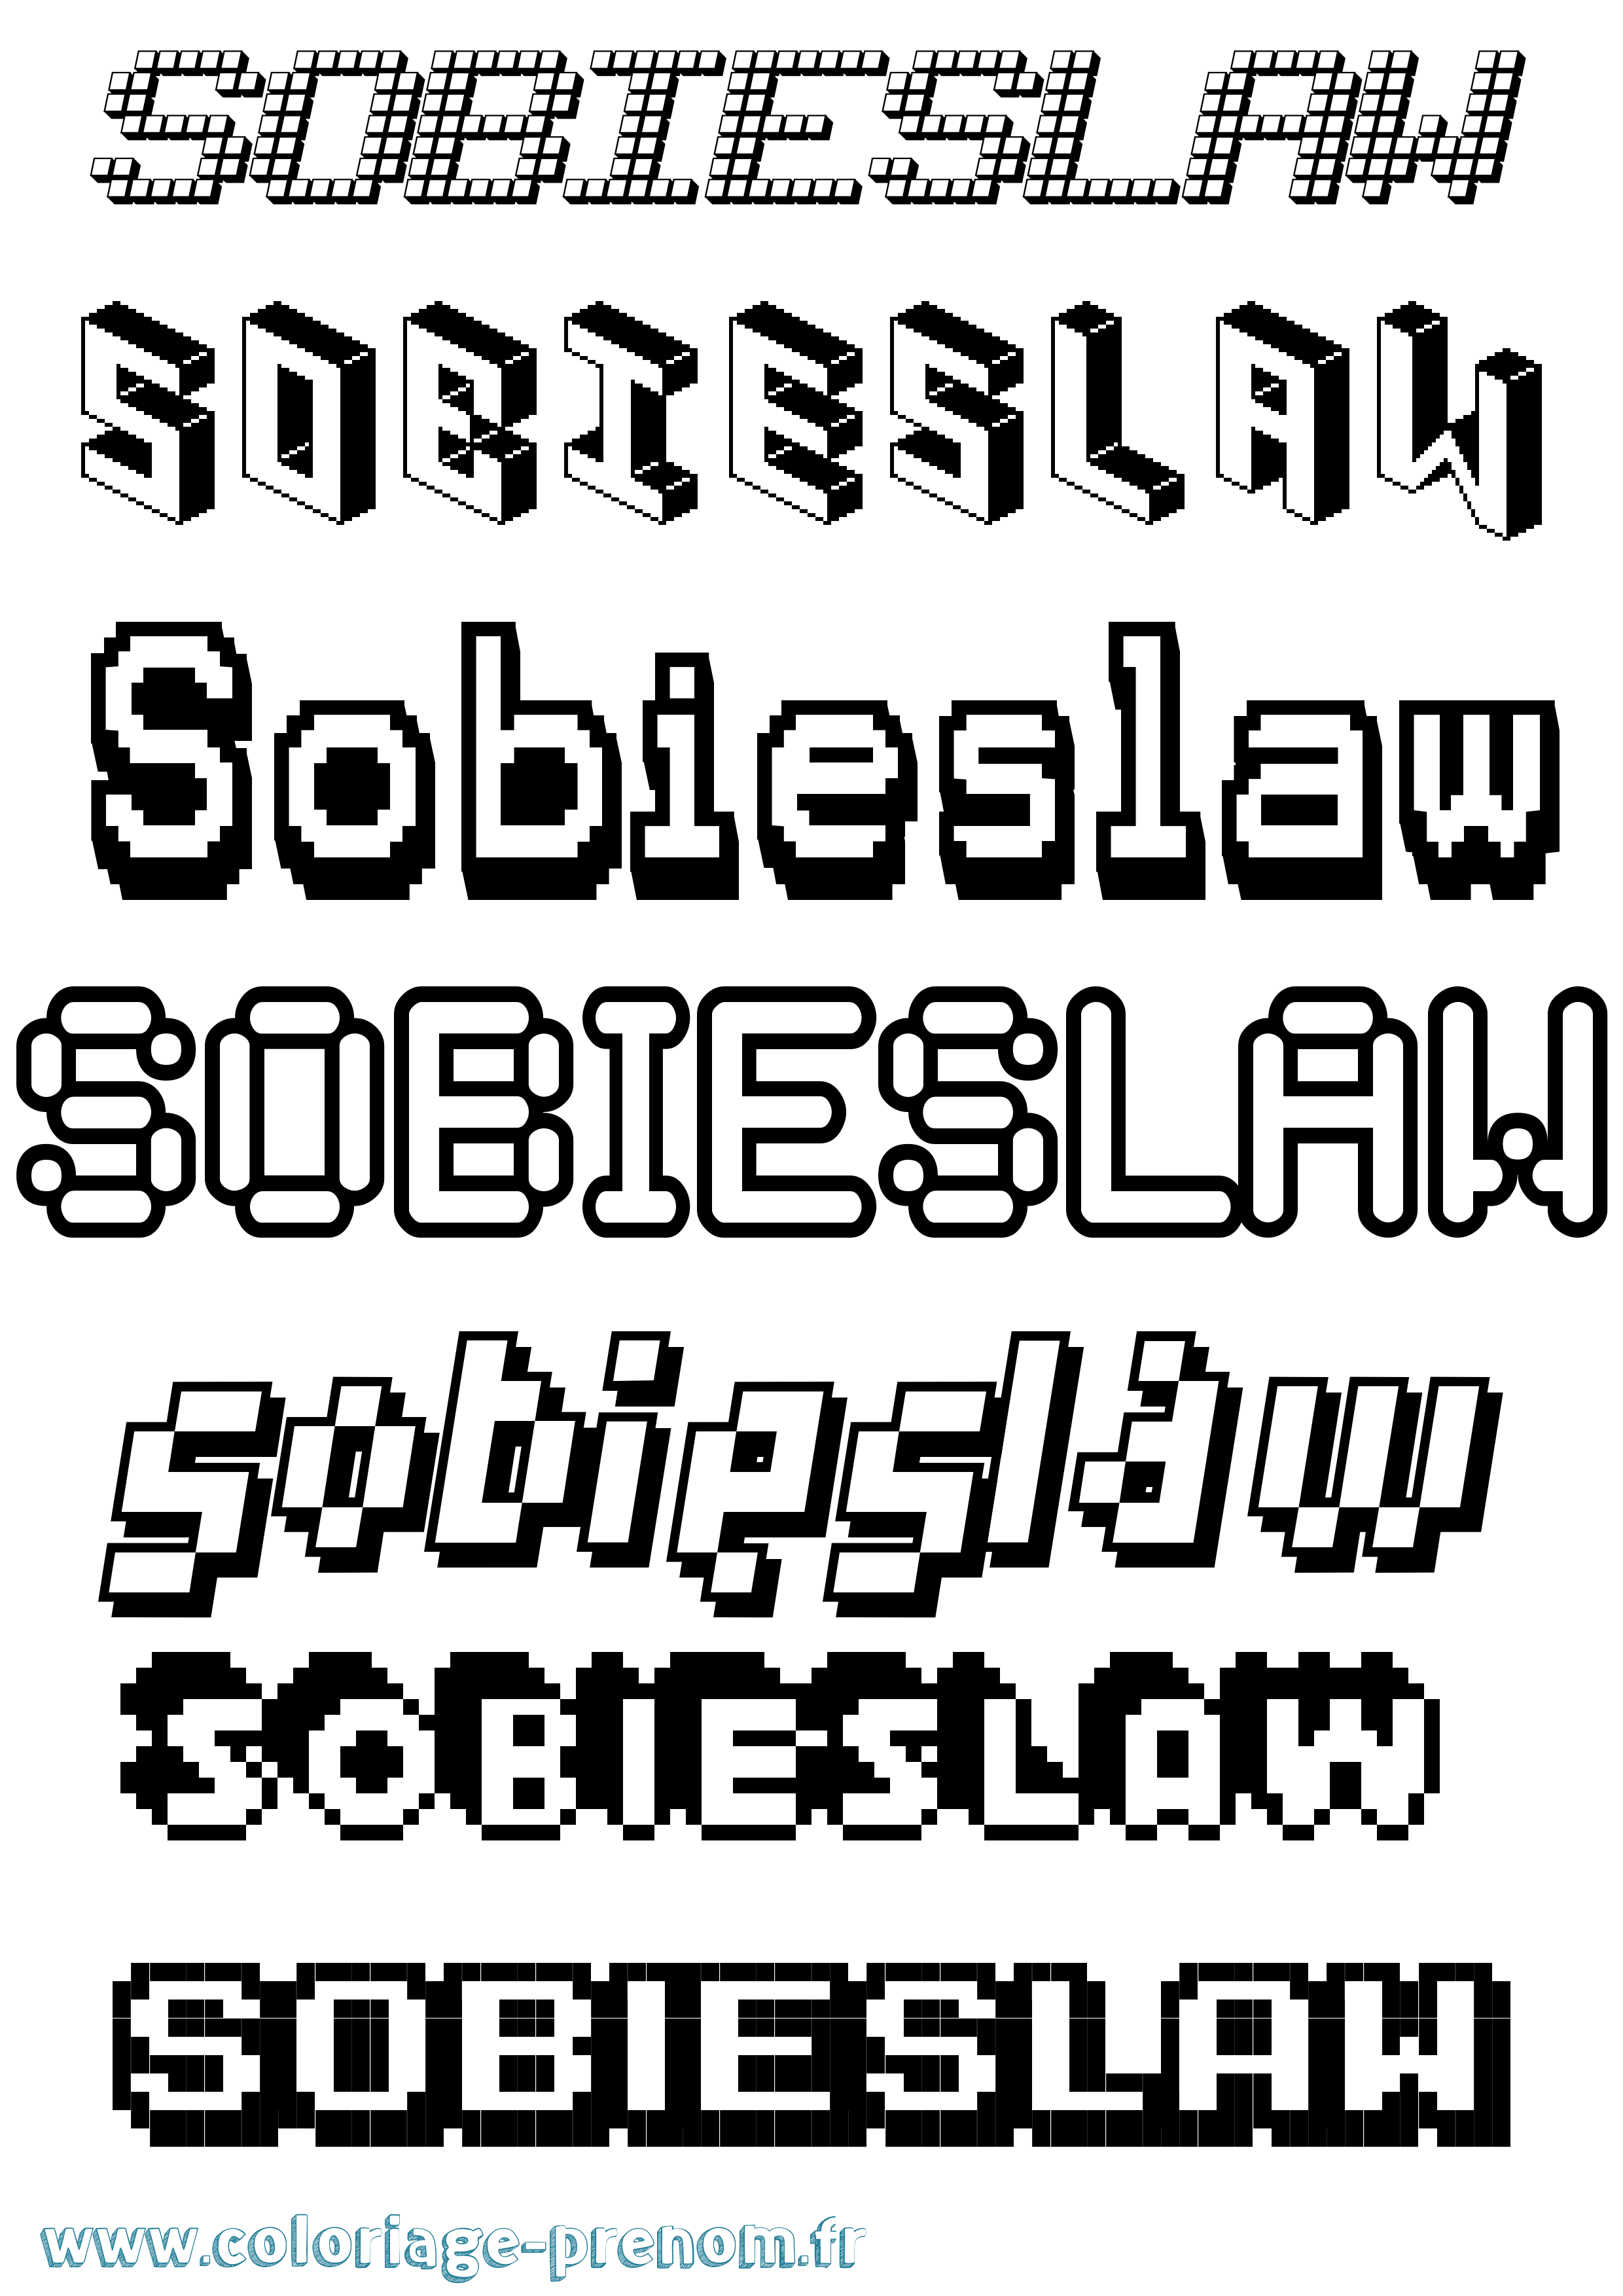 Coloriage prénom Sobieslaw Pixel